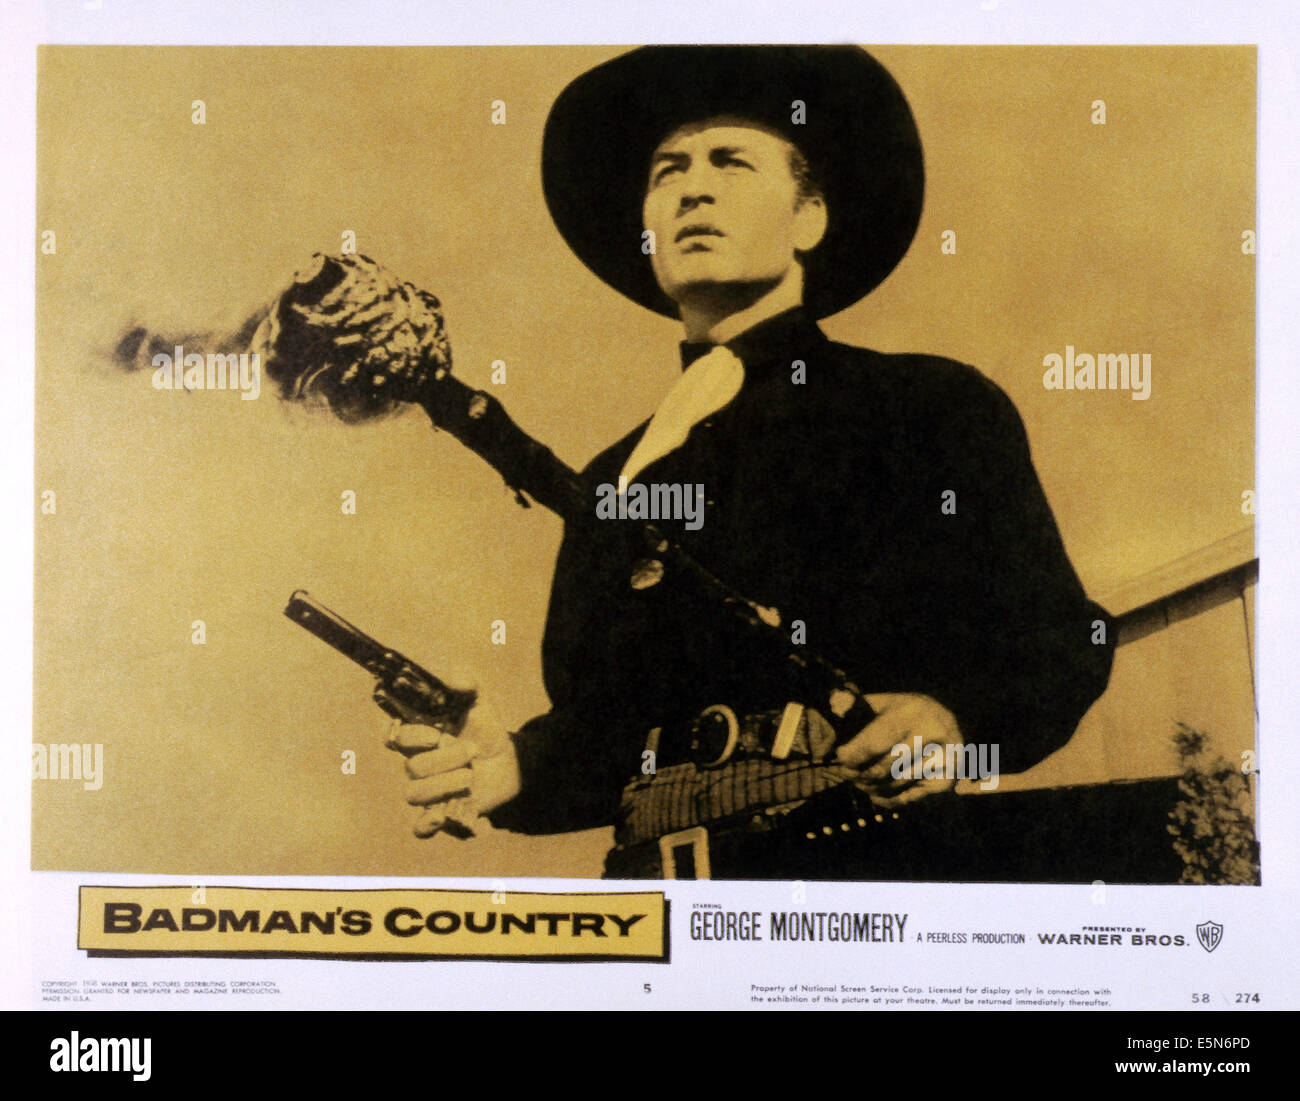 BADMAN'S COUNTRY, George Montgomery, 1958 Stock Photo